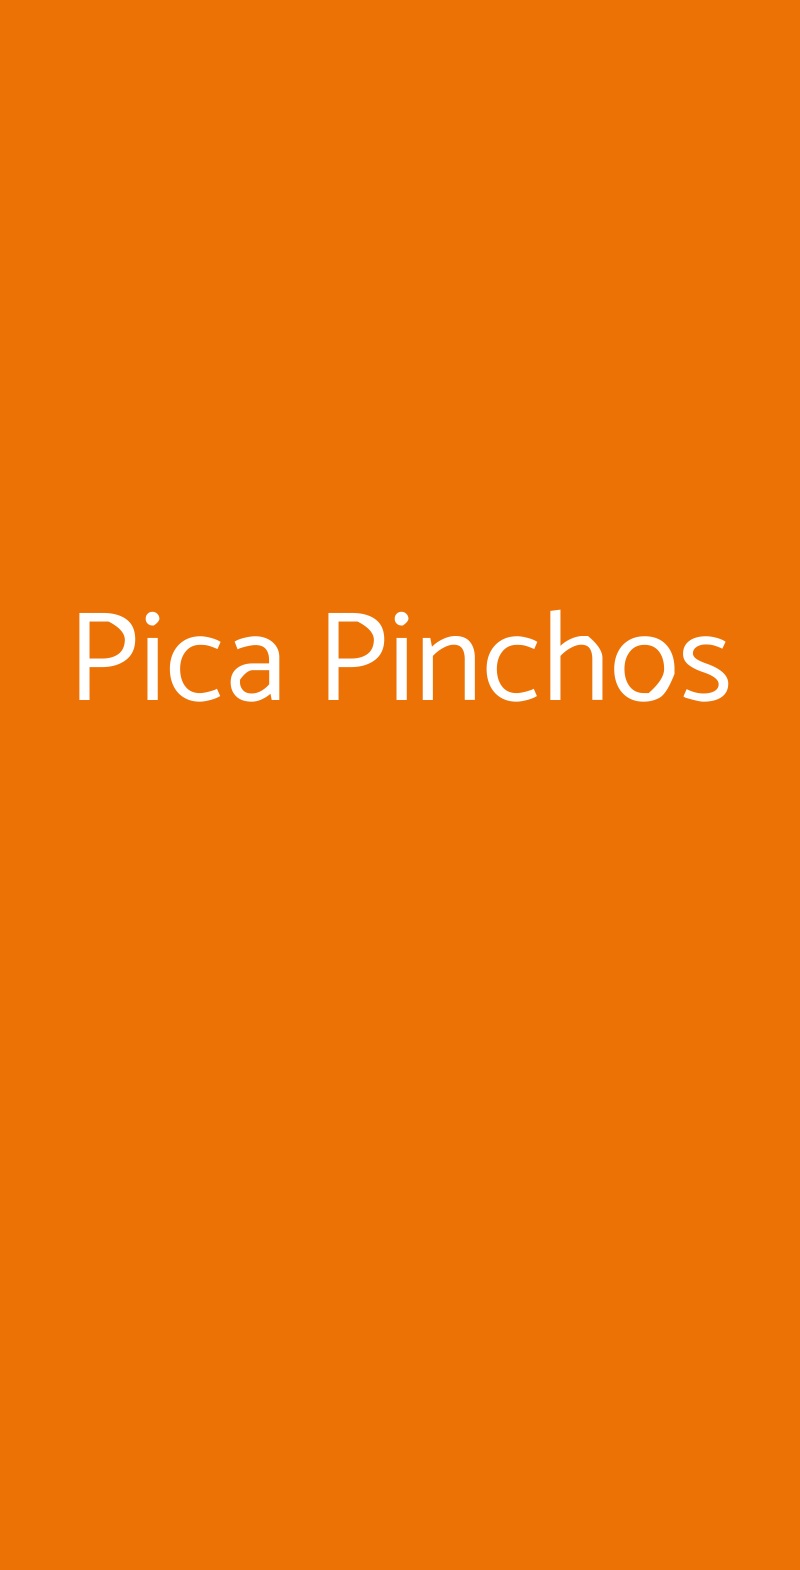 Pica Pinchos Milano menù 1 pagina